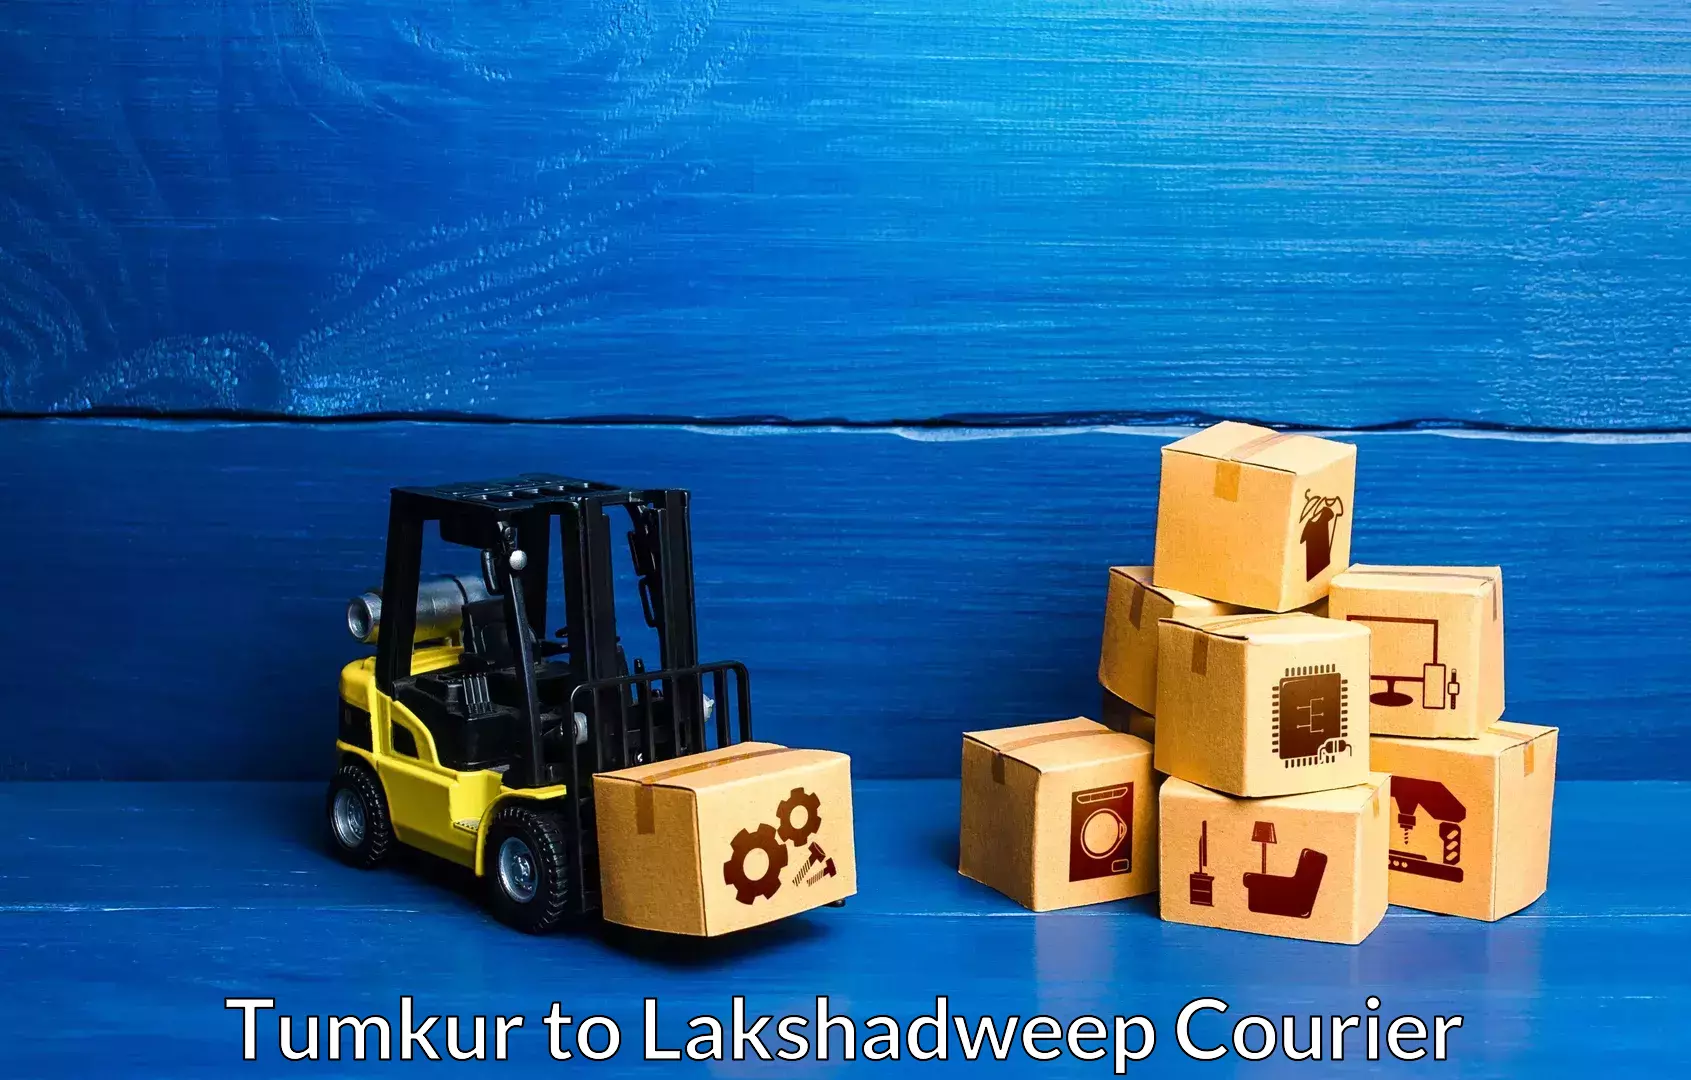 Furniture moving experts Tumkur to Lakshadweep